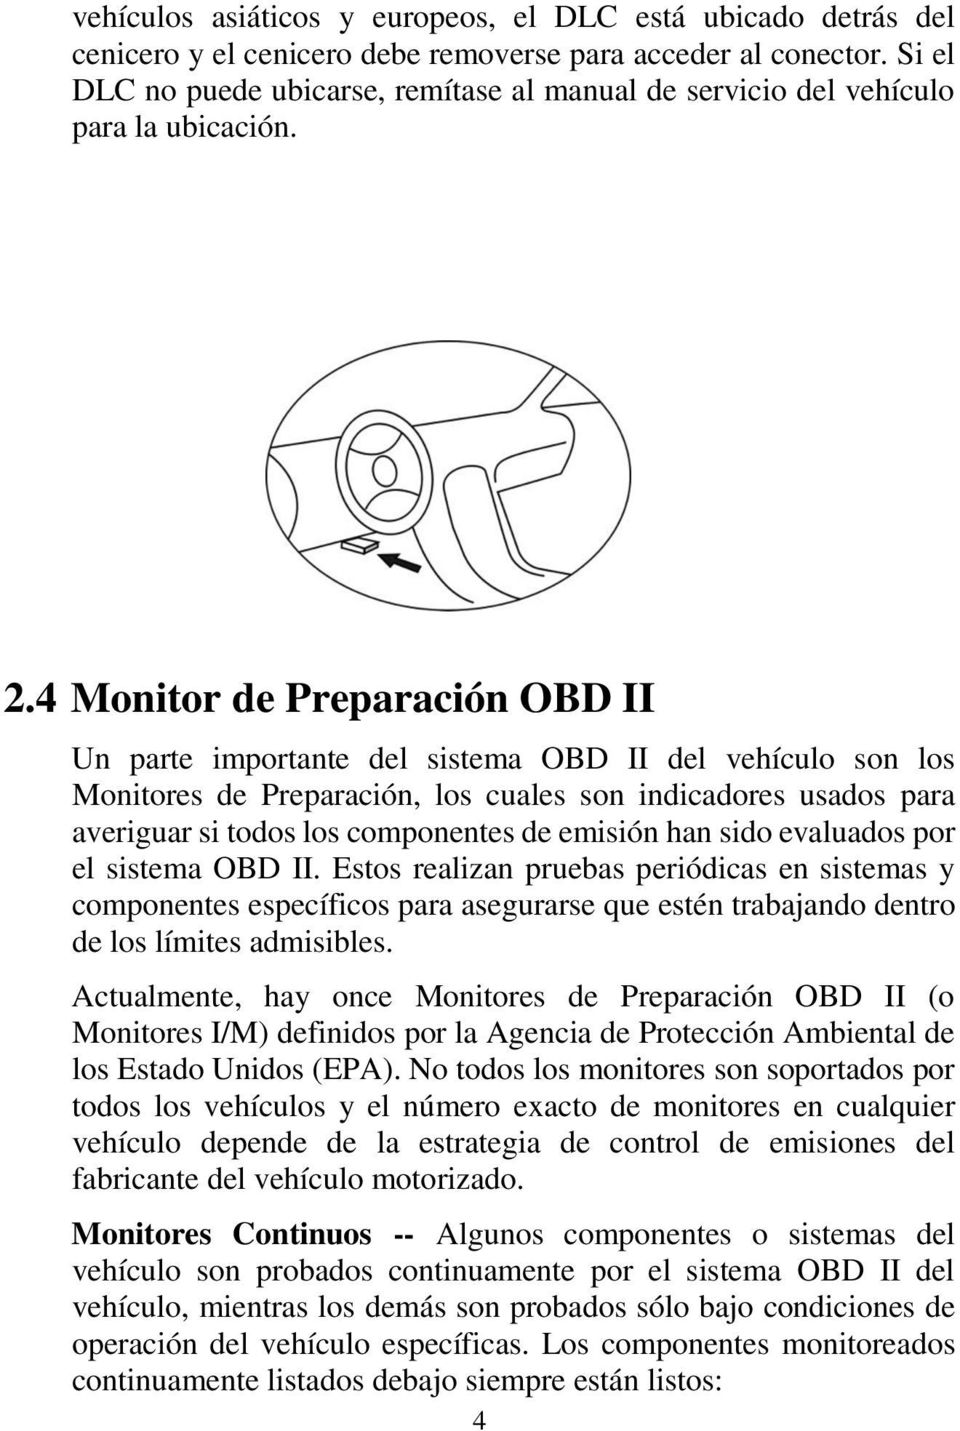 4 Monitor de Preparación OBD II Un parte importante del sistema OBD II del vehículo son los Monitores de Preparación, los cuales son indicadores usados para averiguar si todos los componentes de